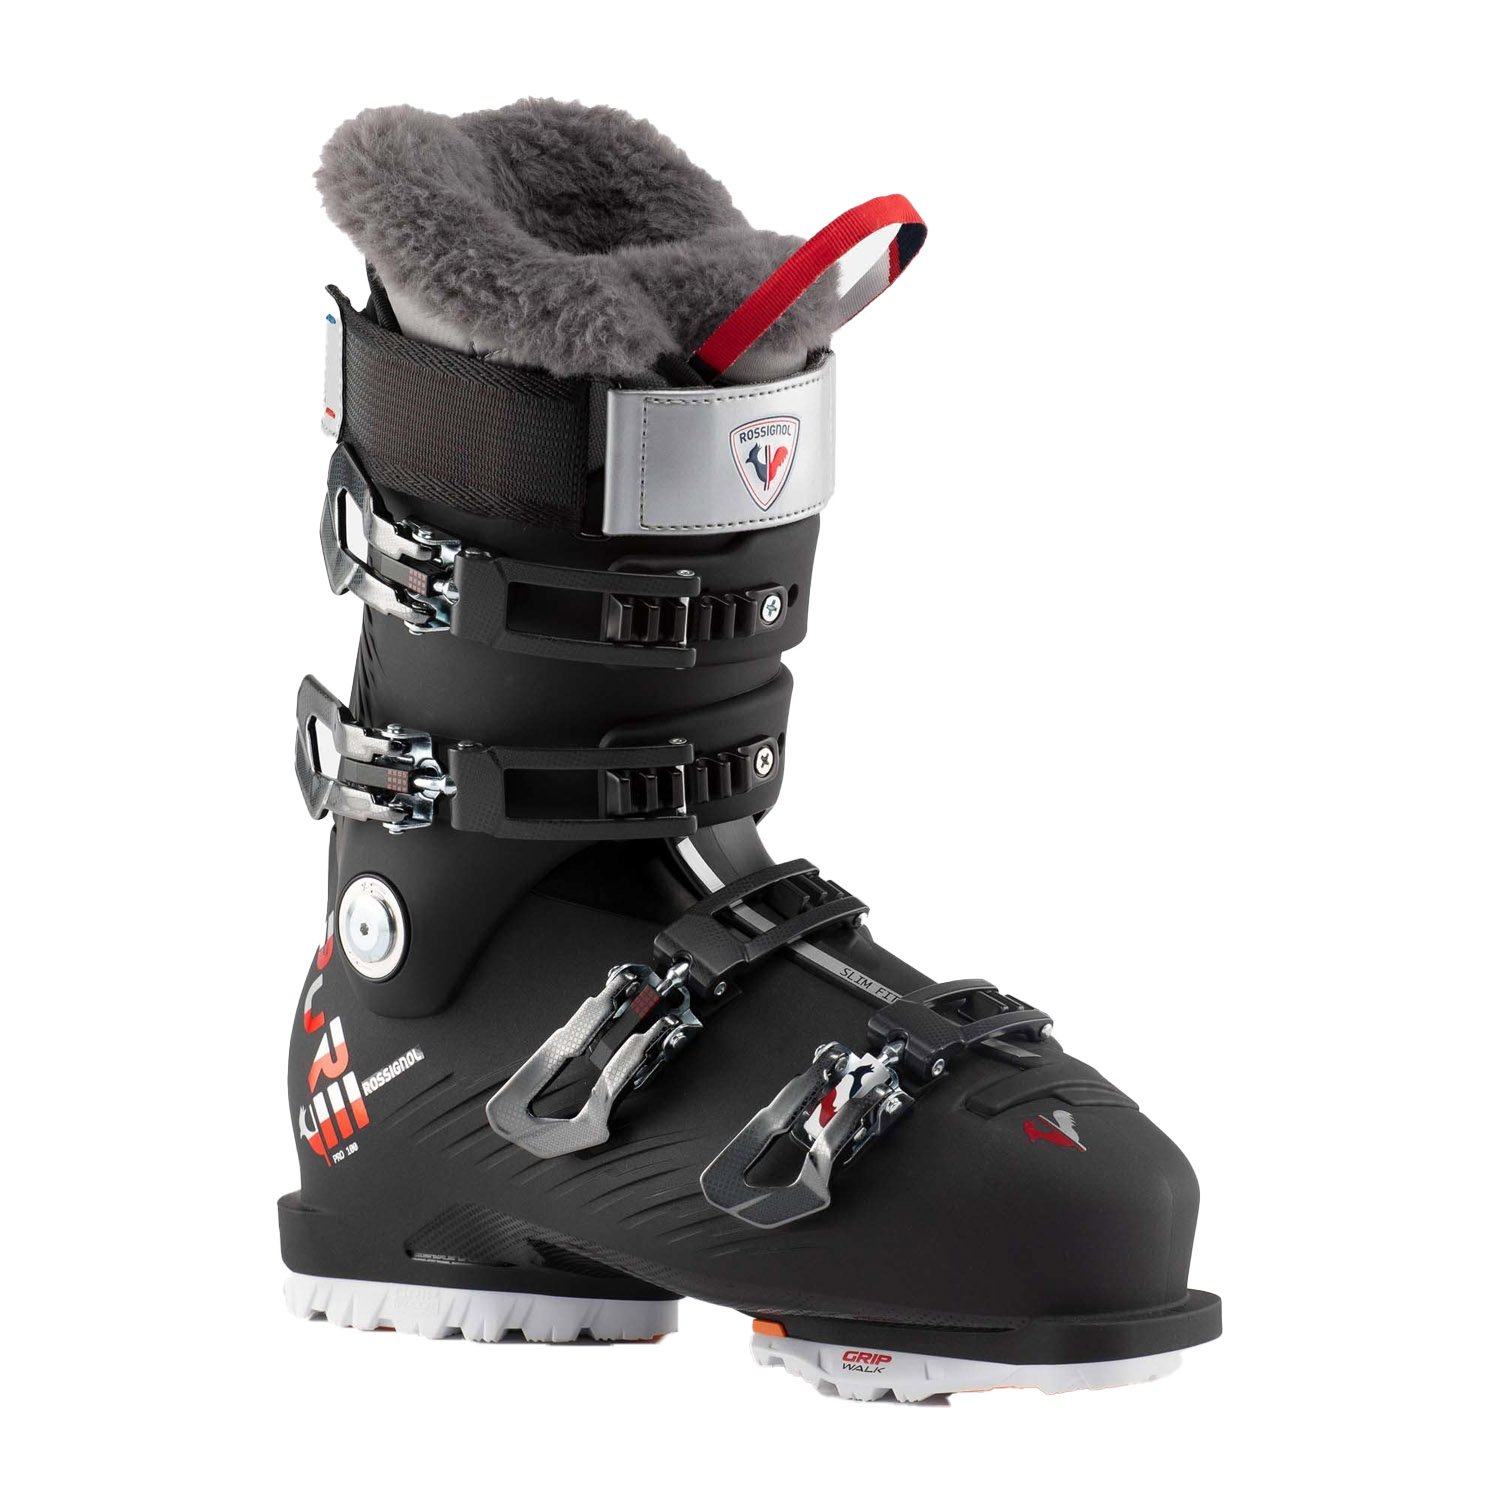 Rossignol Pure 100 Pro Kayak Ayakkabısı - Renkli - 1